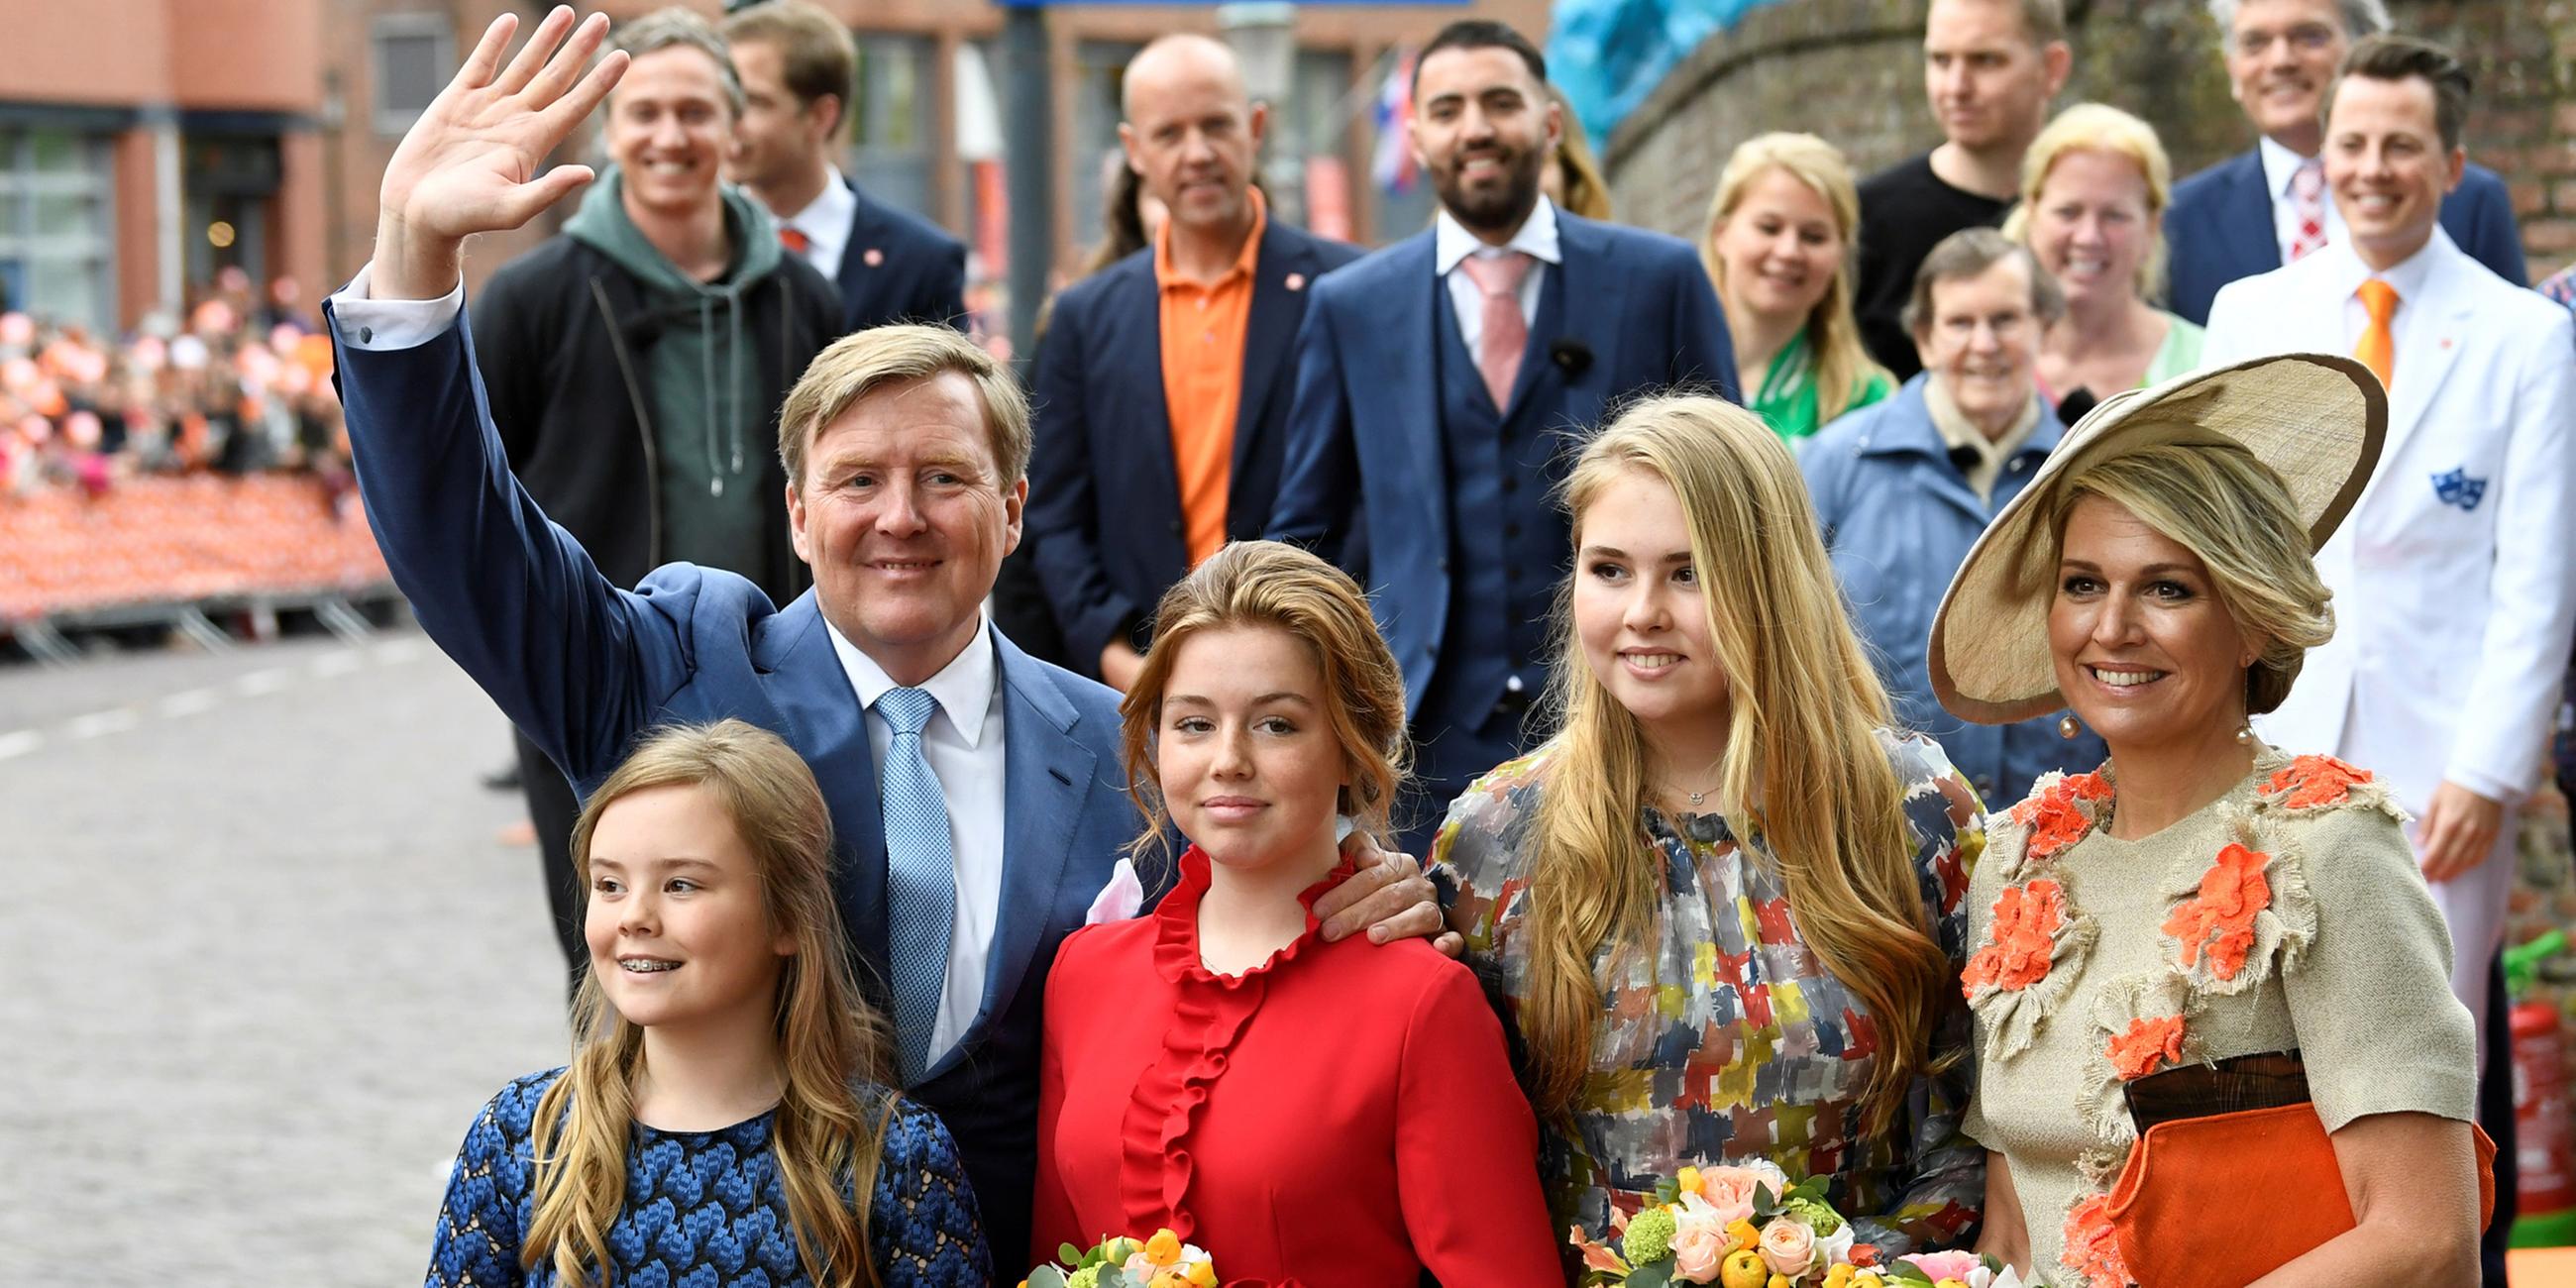 König Willem-Alexander und Königin Maxima mit ihren Töchtern, Prinzessin Ariane,  Prinzessin Alexia und Prinzessin Catharina-Amalia am 27.04.2019 in Amersfoort